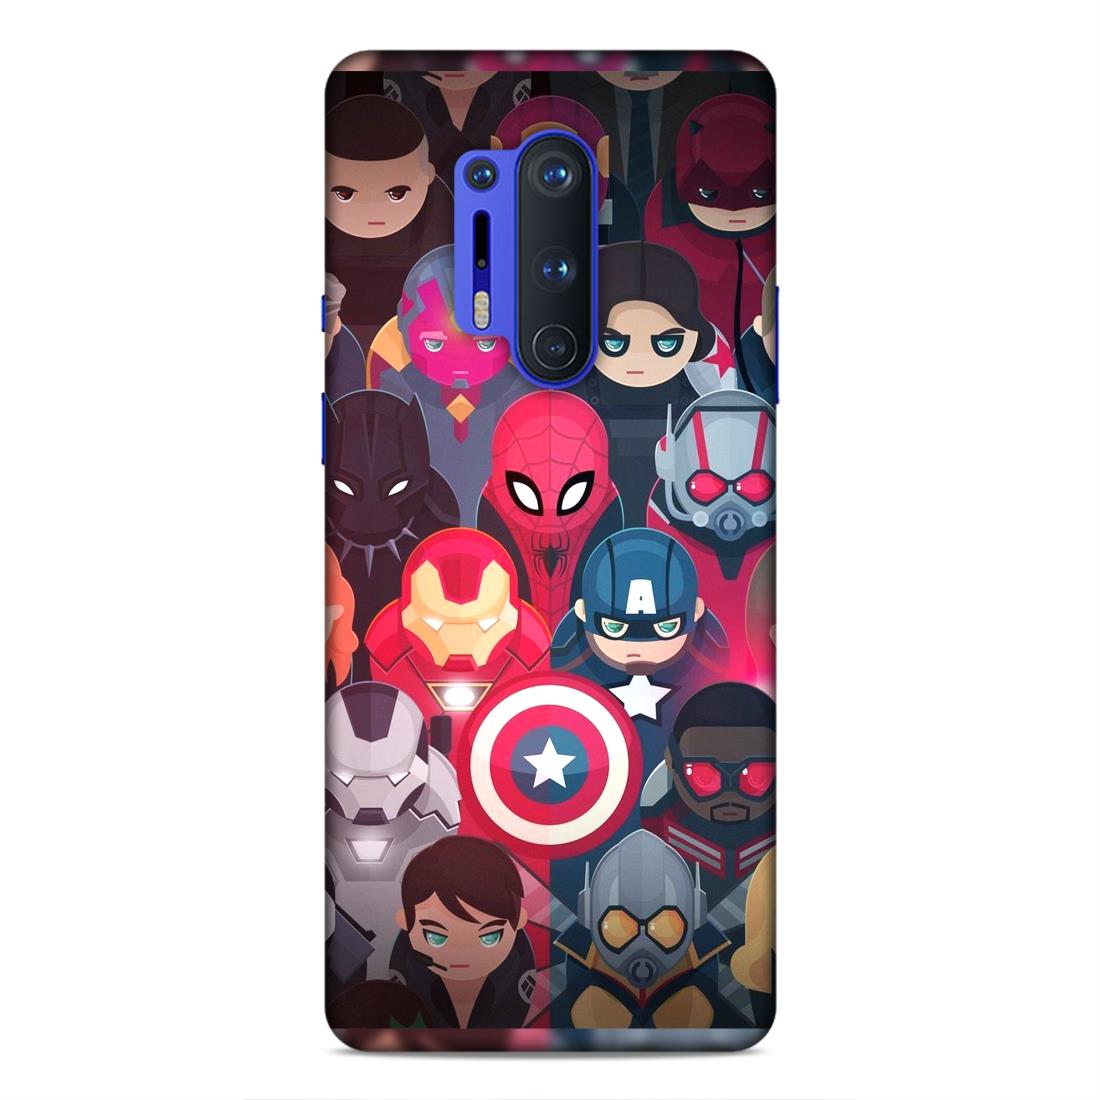 Avenger Heroes Hard Back Case For OnePlus 8 Pro